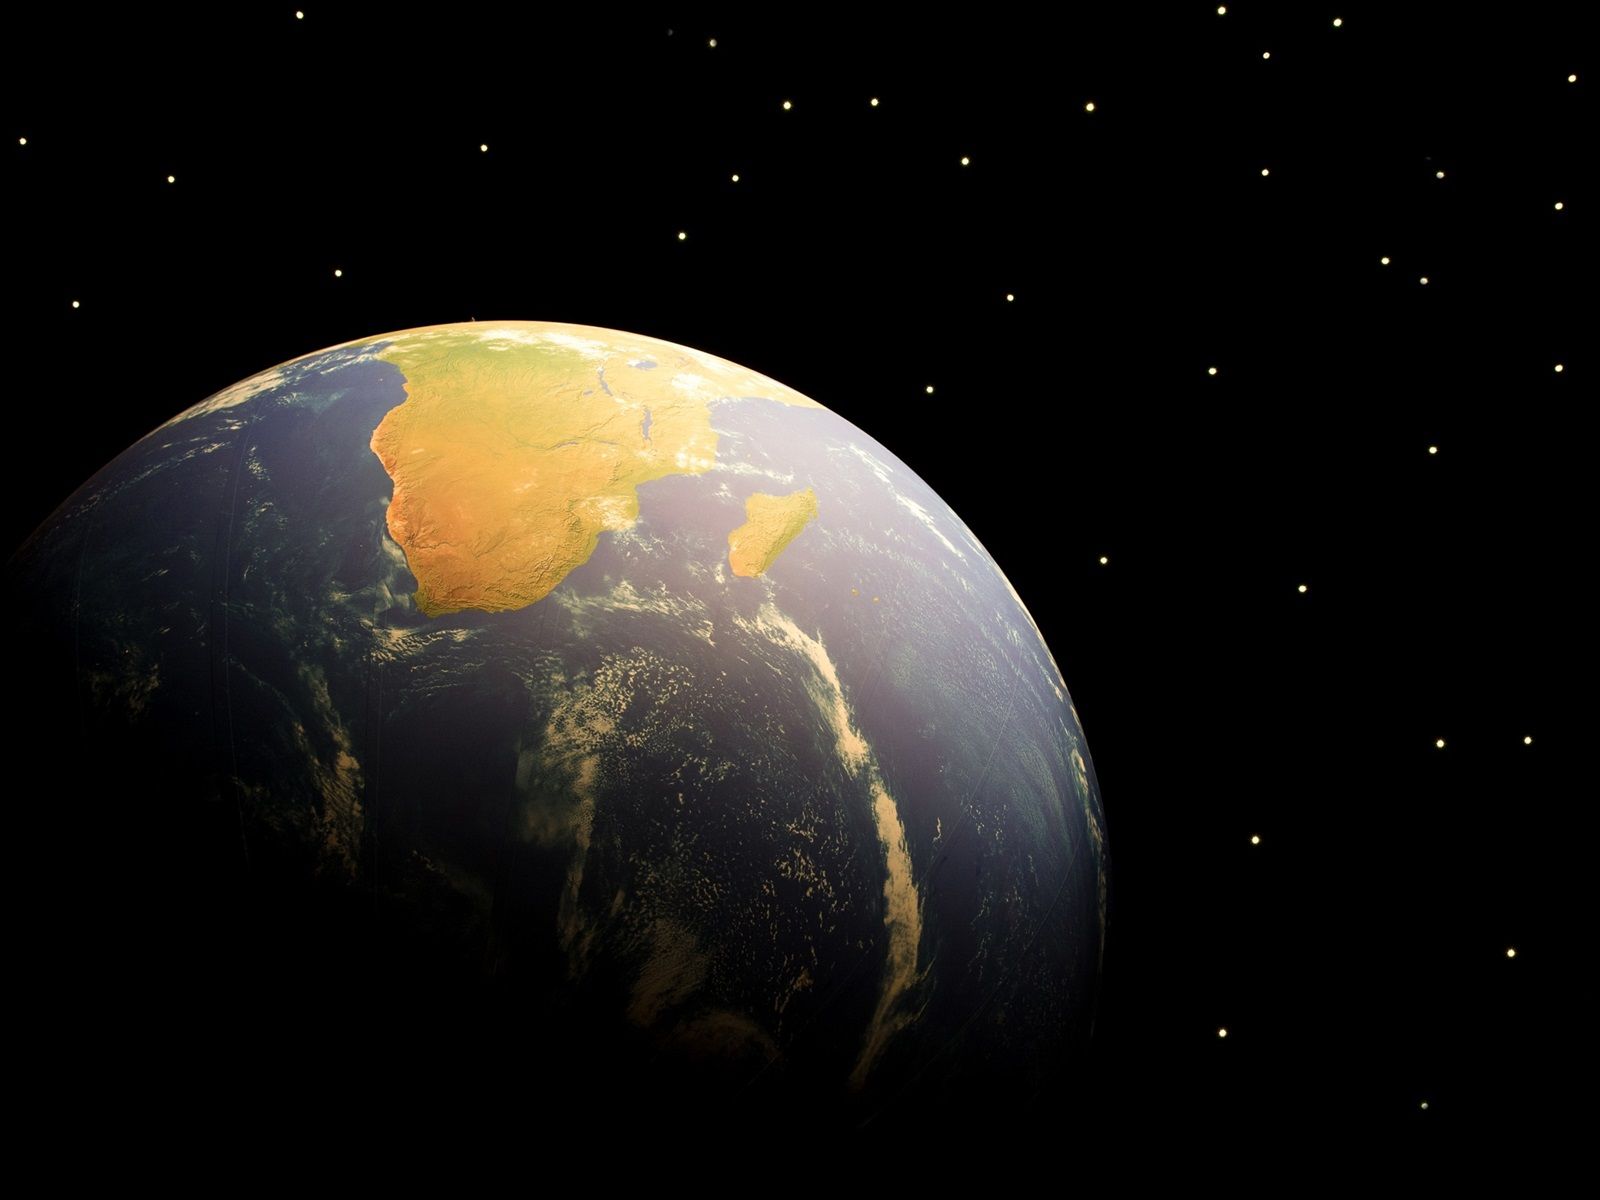  Erde Hintergrundbild 1600x1200. Erde, Raum, Sterne 750x1334 IPhone 8 7 6 6S Hintergrundbilder, HD, Bild